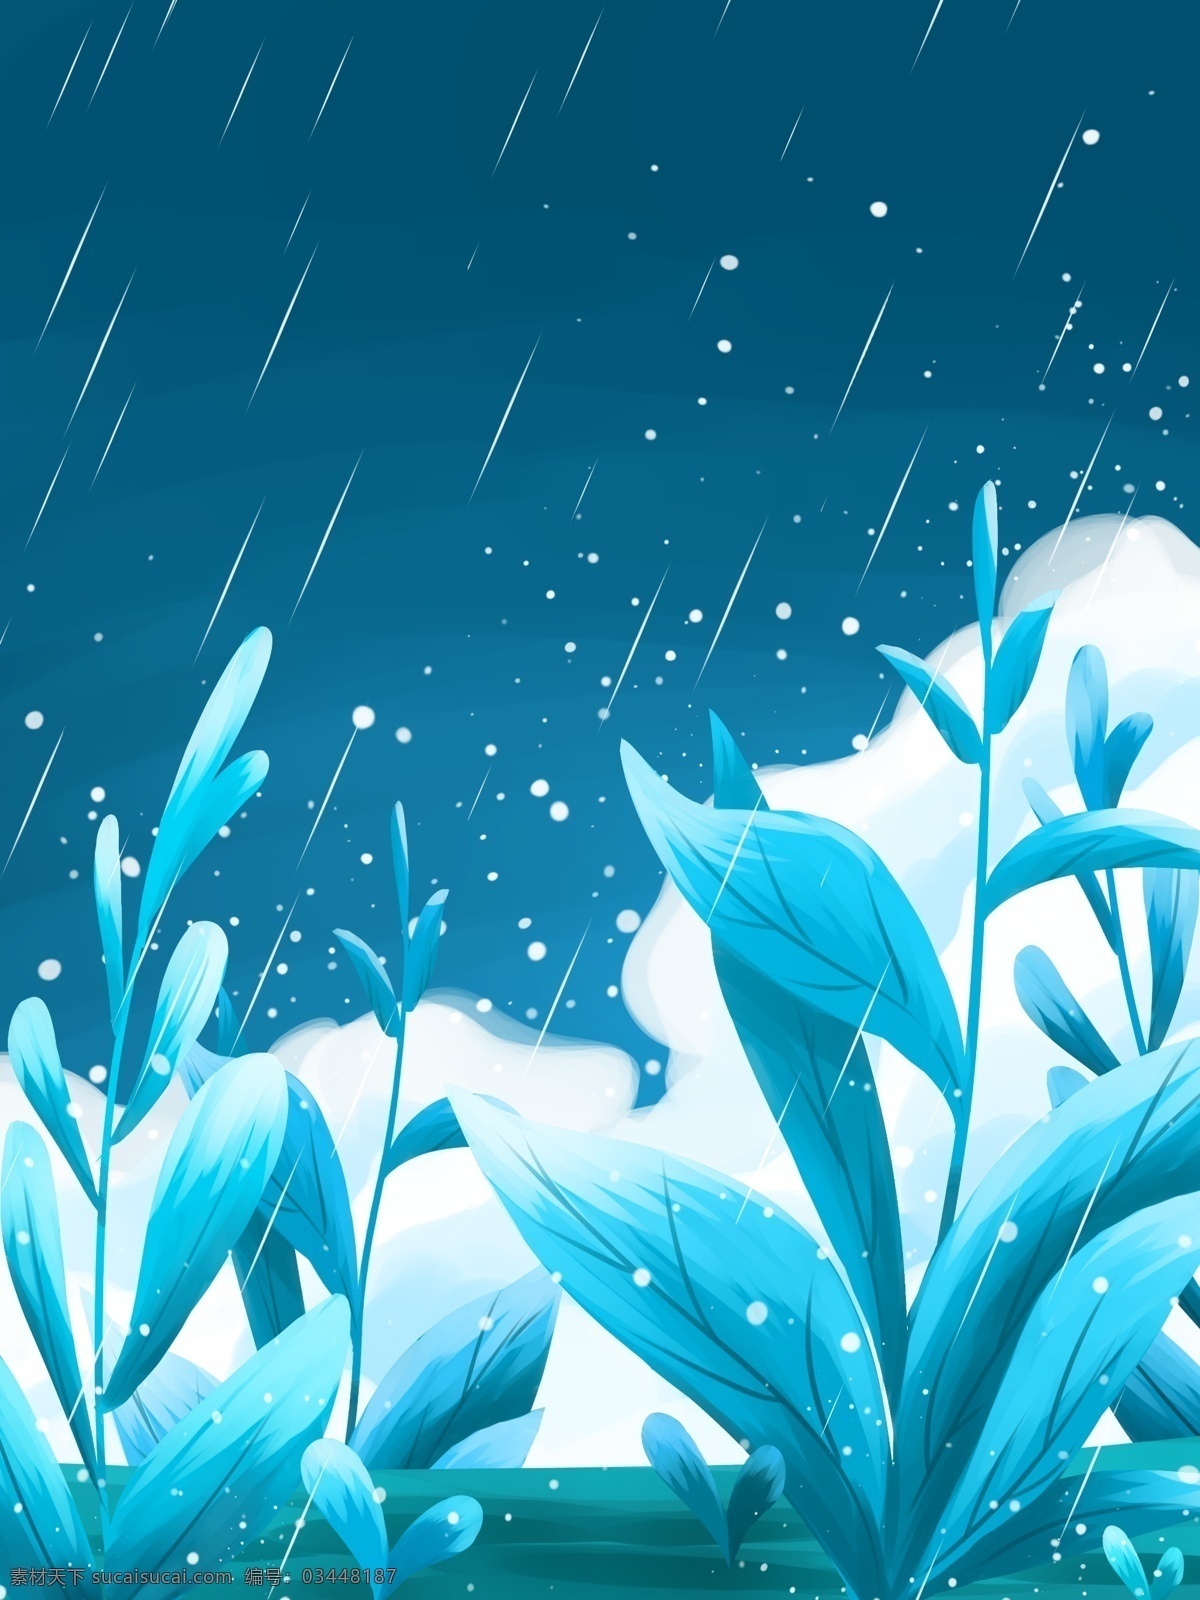 下雨 蓝色 梦境 唯美 植物 插画 背景 植物背景 psd背景 花卉背景 卡通背景 风景插画背景 下雨背景 蓝色背景